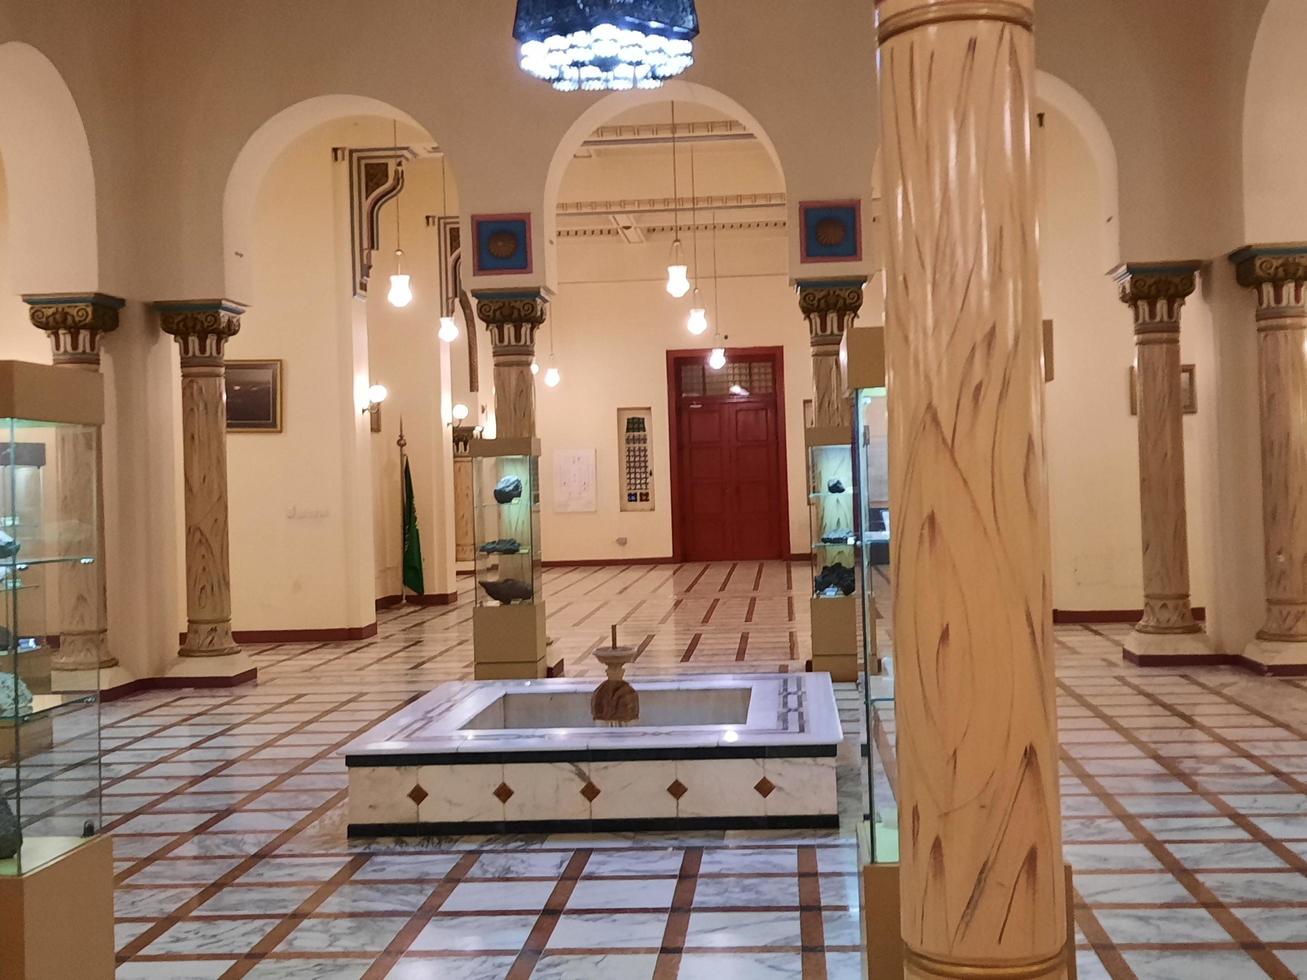 makkah, arabie saoudite, mai 2022 - le musée du palais al-zaher à la makkah, arabie saoudite, est un musée historique qui expose l'histoire de l'islam. photo